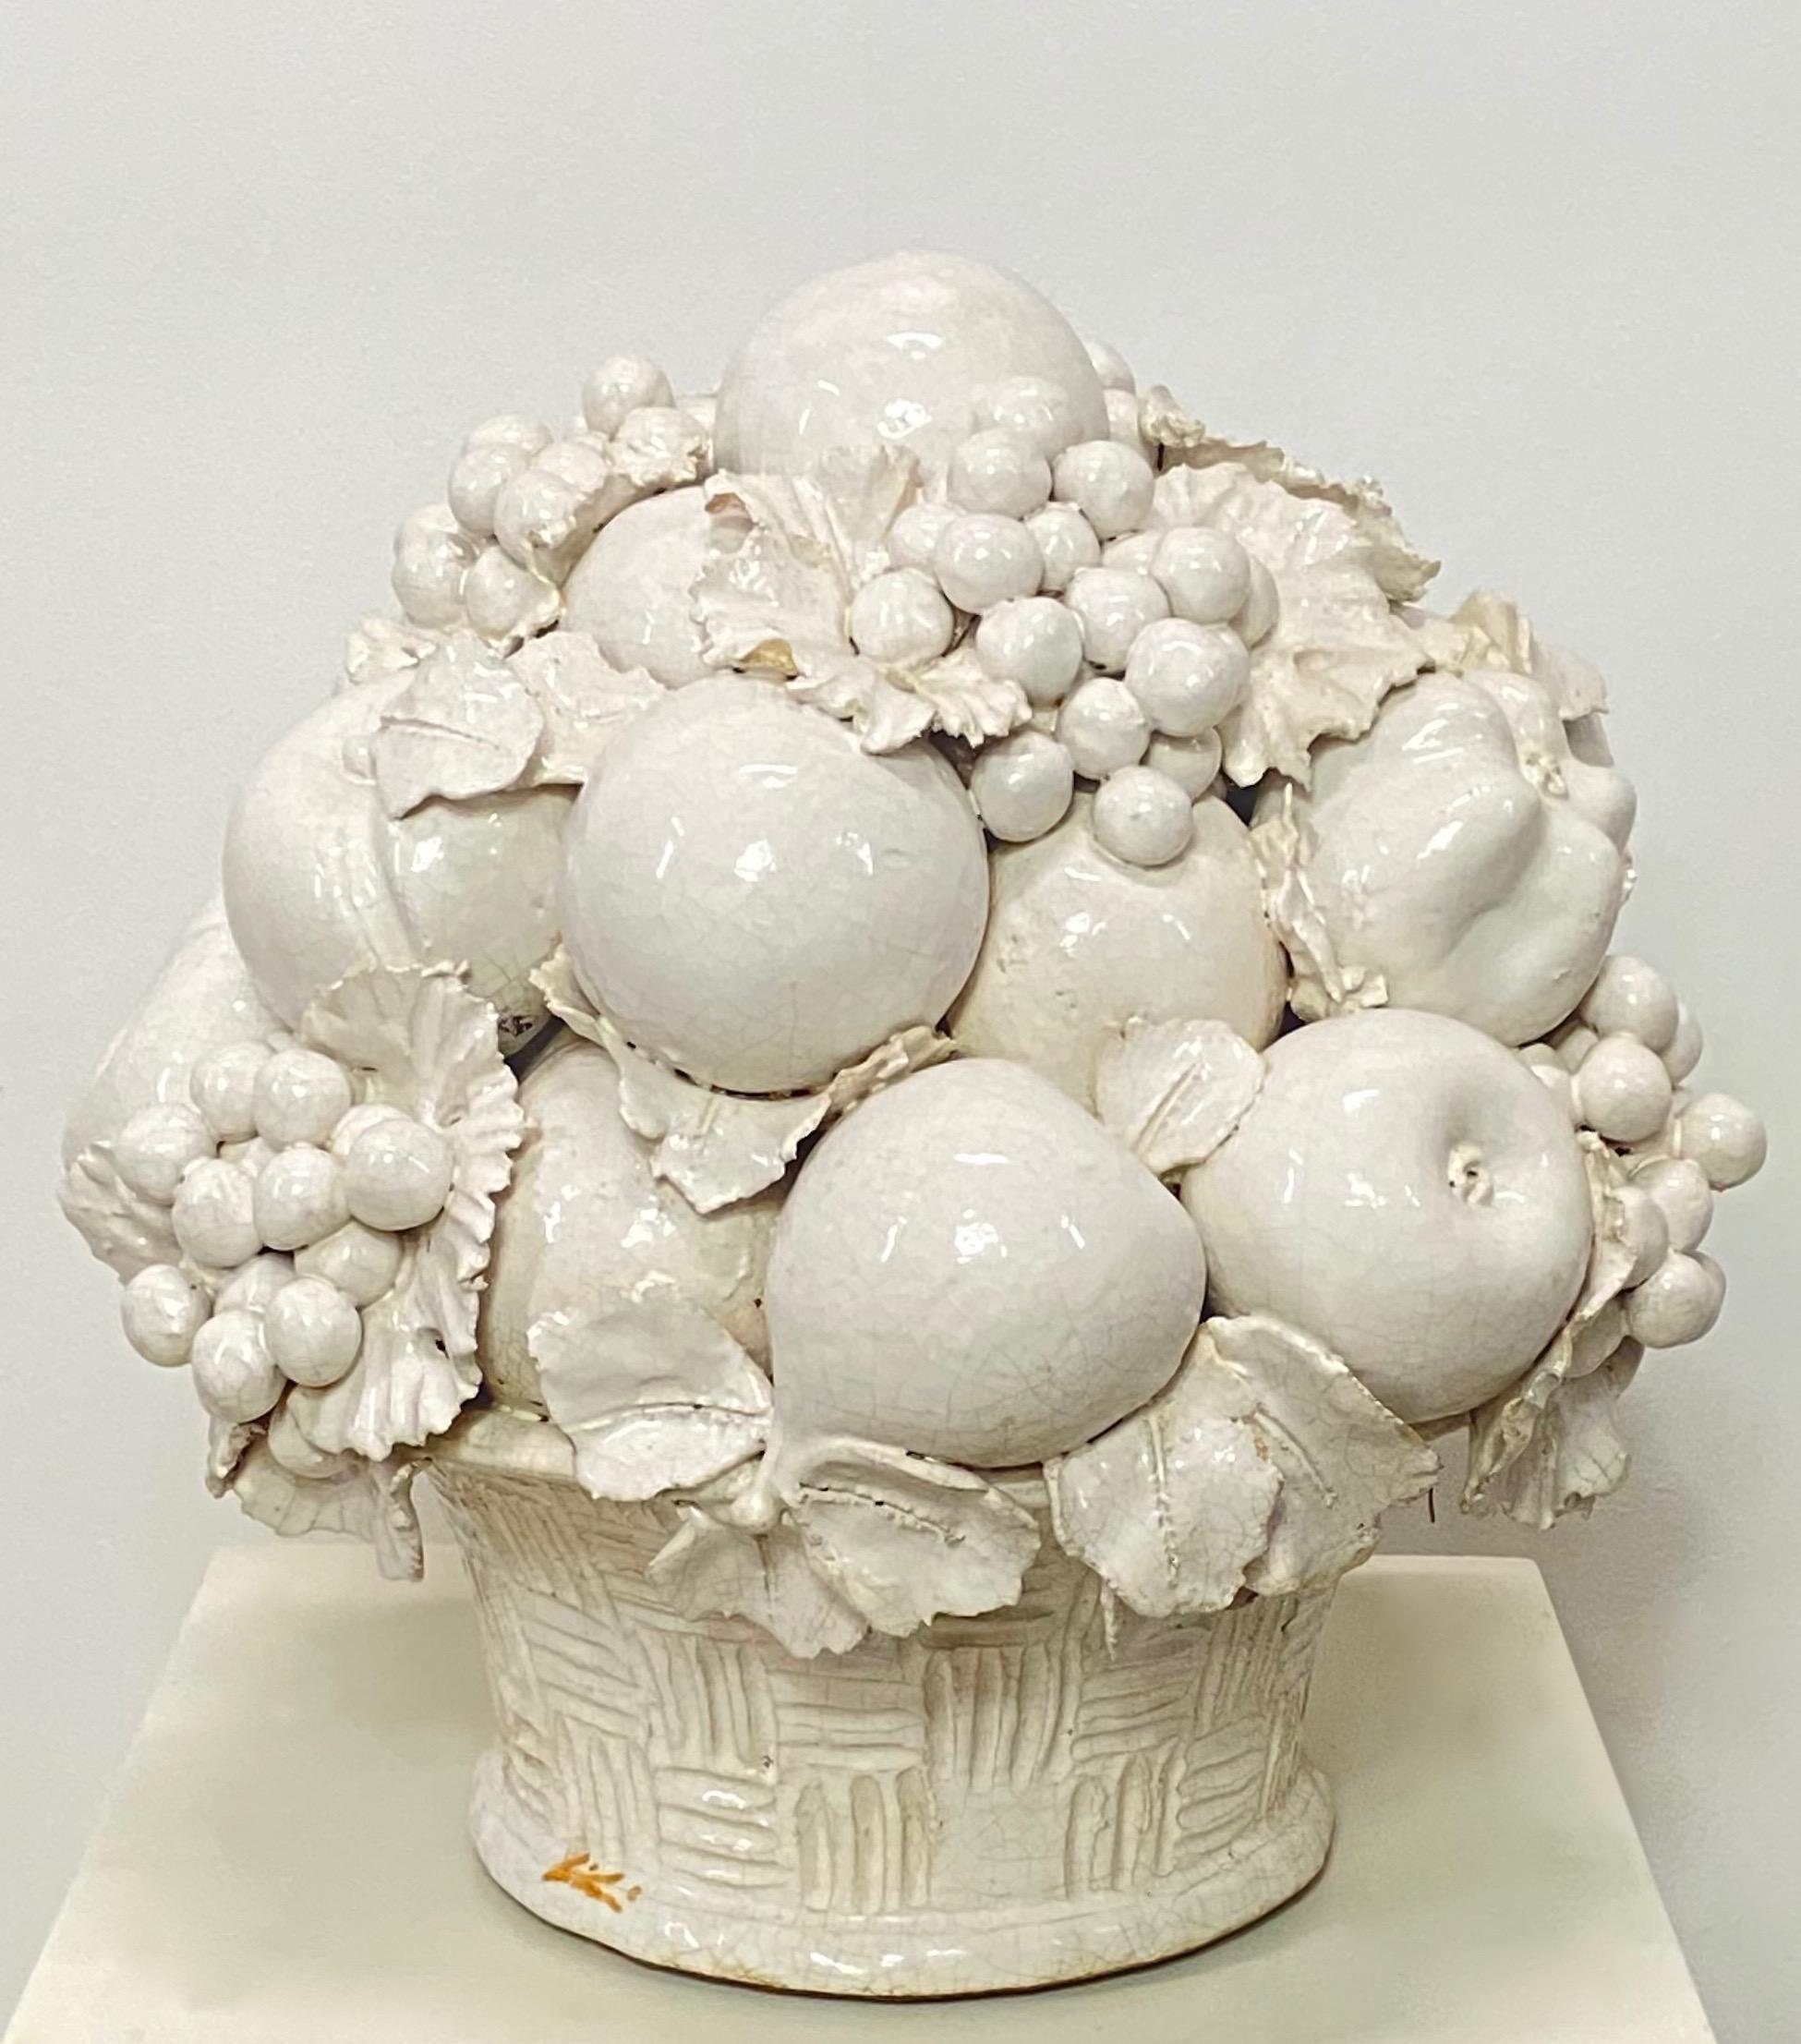 Terracotta Italian White Glazed Ceramic Fruit Basket Life Size Sculpture, Artist Signed